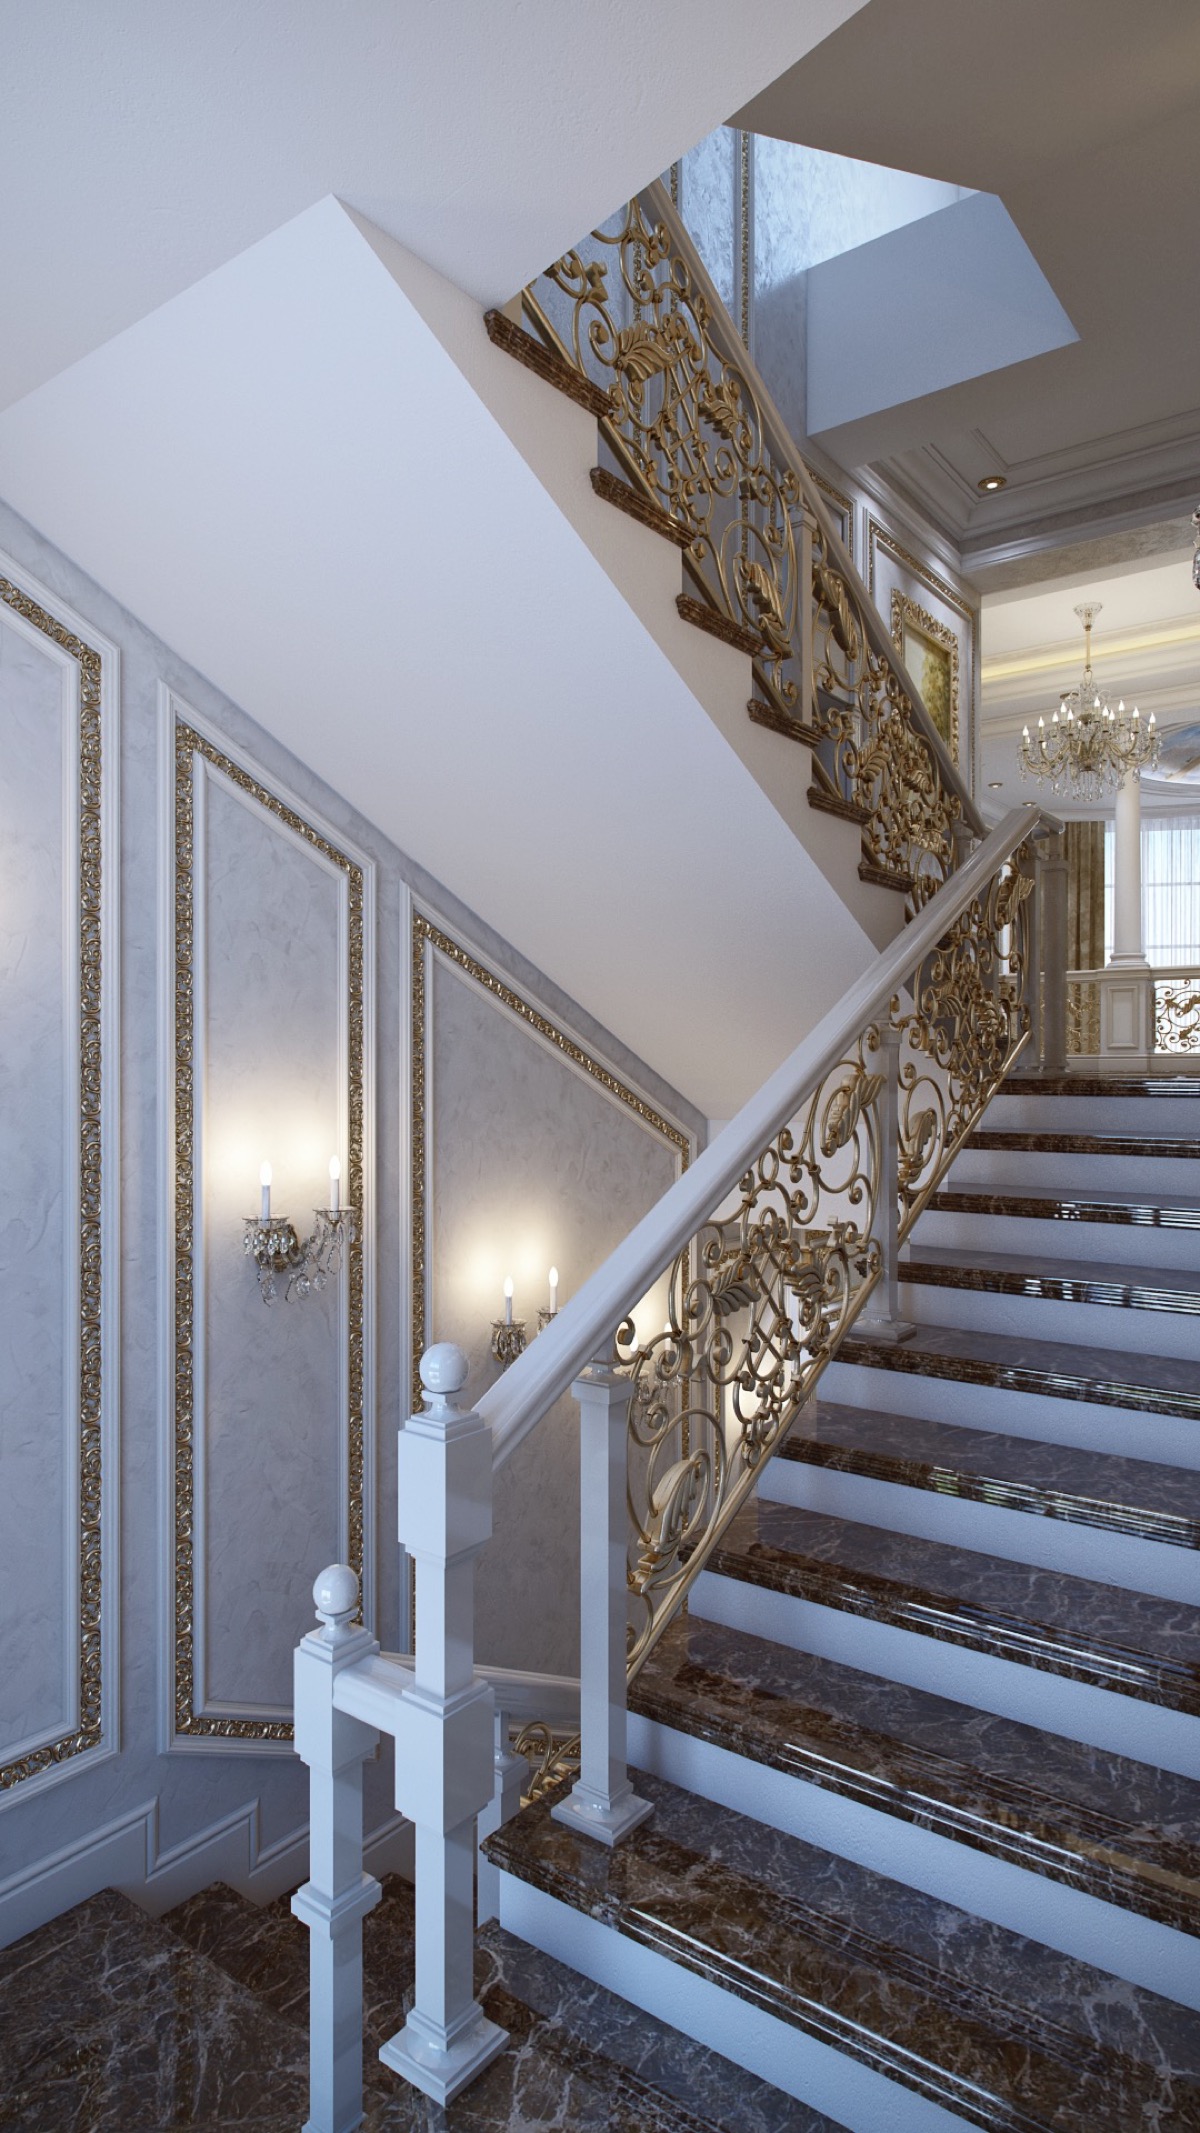 Thiết kế nội thất cầu thang sang trọng theo phong cách cổ điển thời đại Louis của Pháp